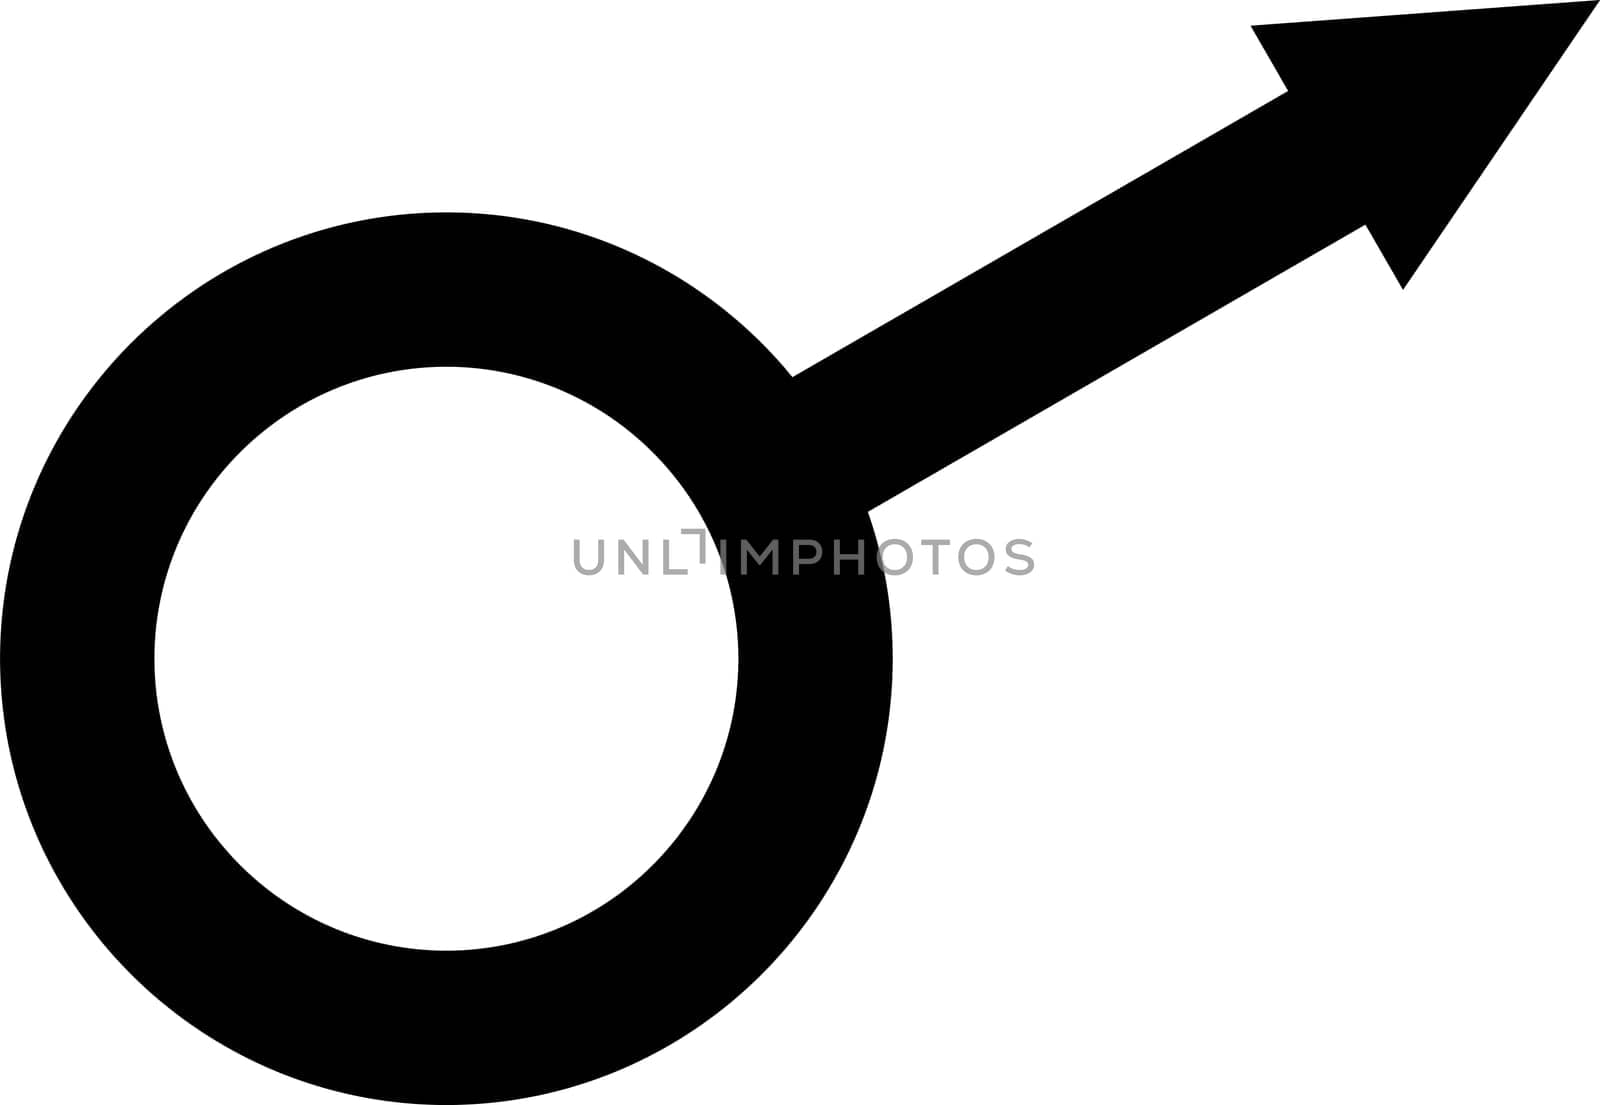 Sgn symbol gender equality, Male, female transgender equality concept